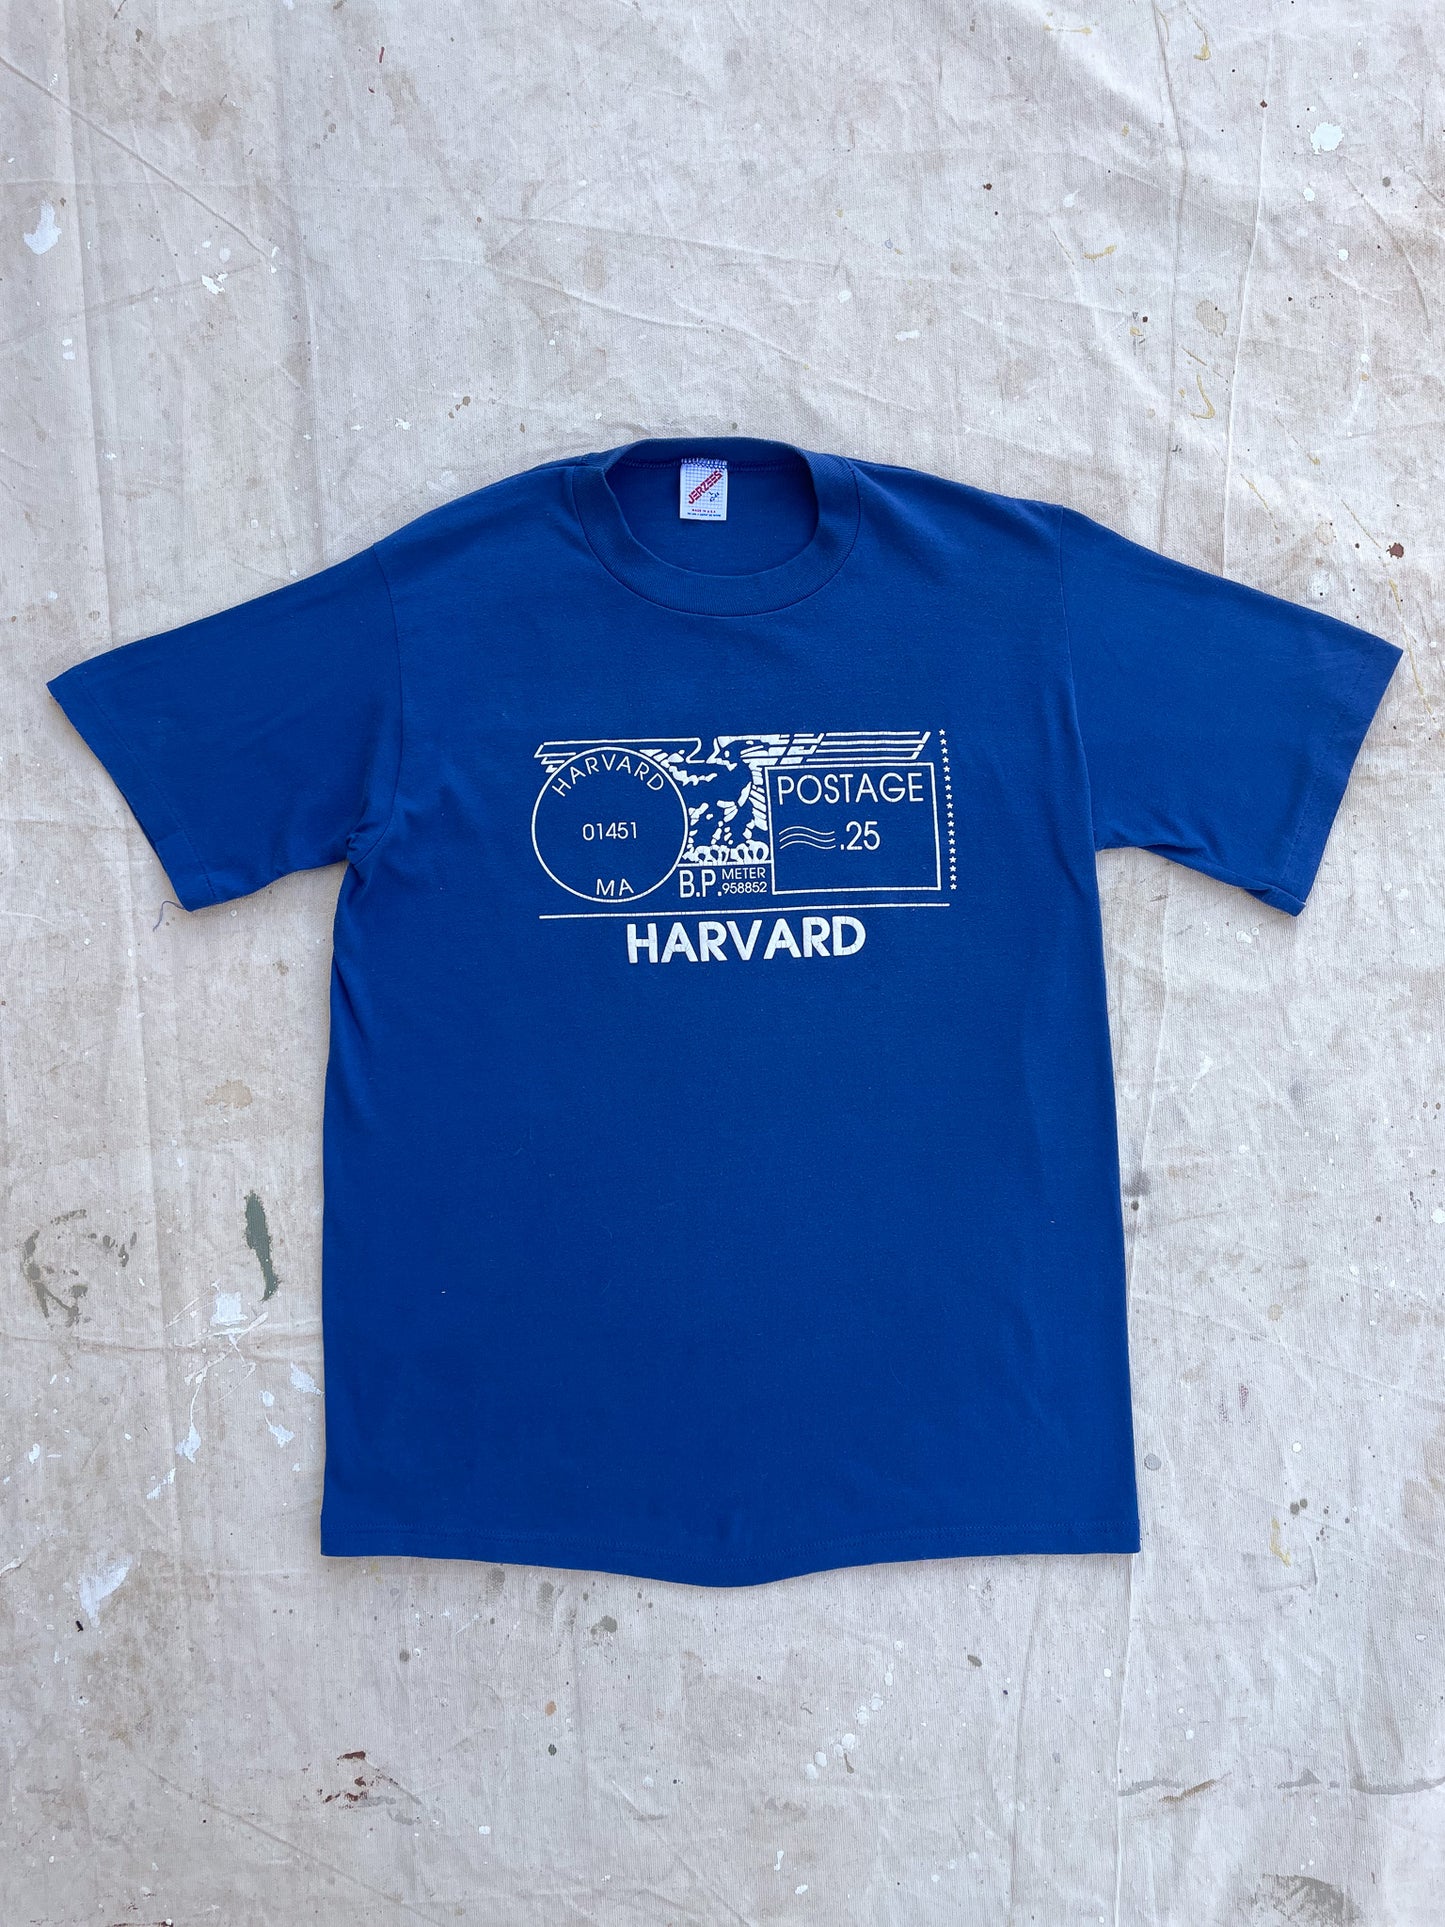 Harvard Postage T-Shirt [L]